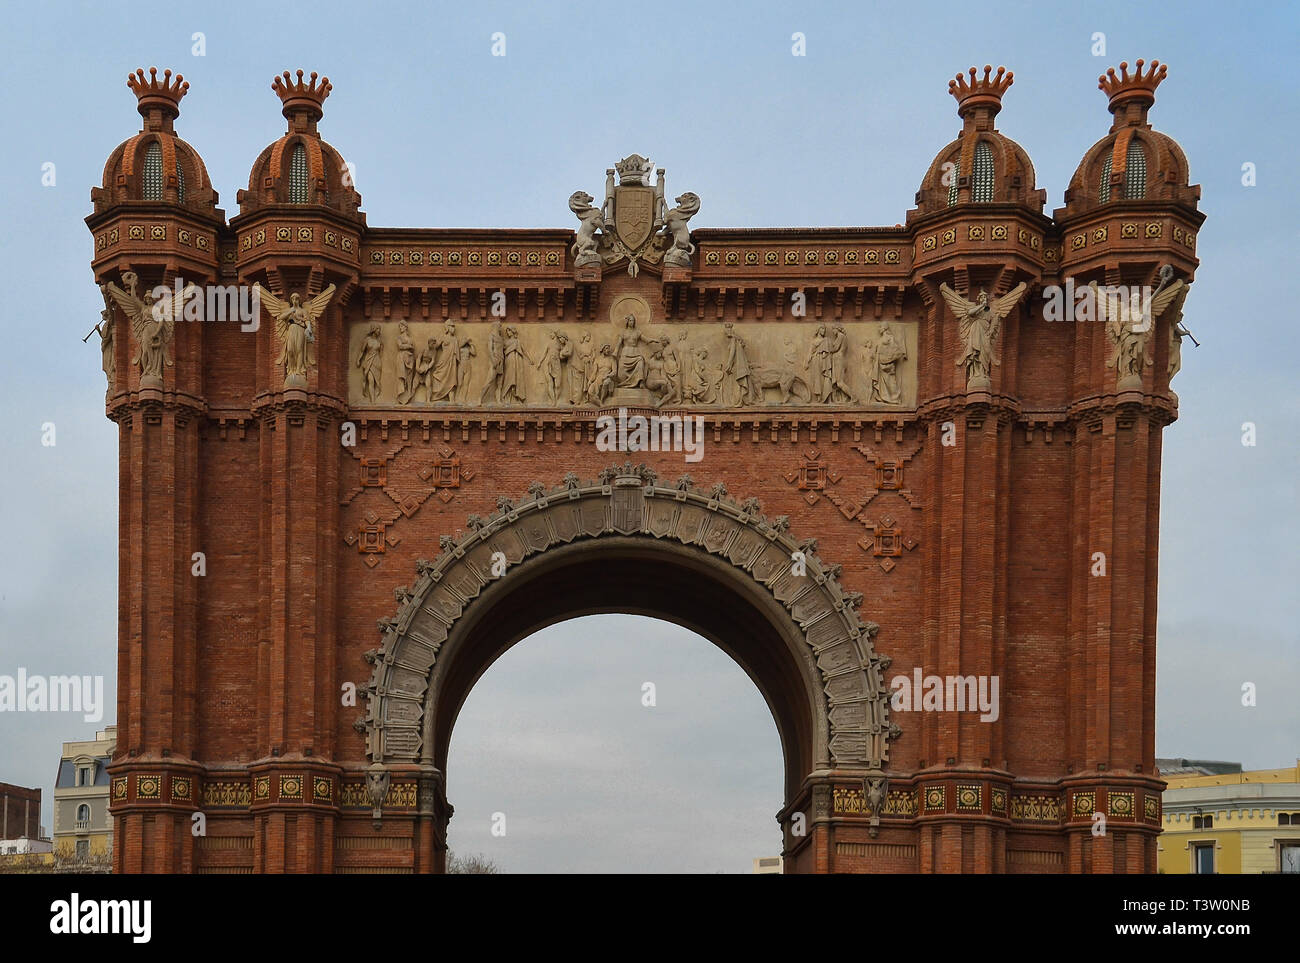 Barcelone Arc de Triomf - Arco de Triunfo Banque D'Images